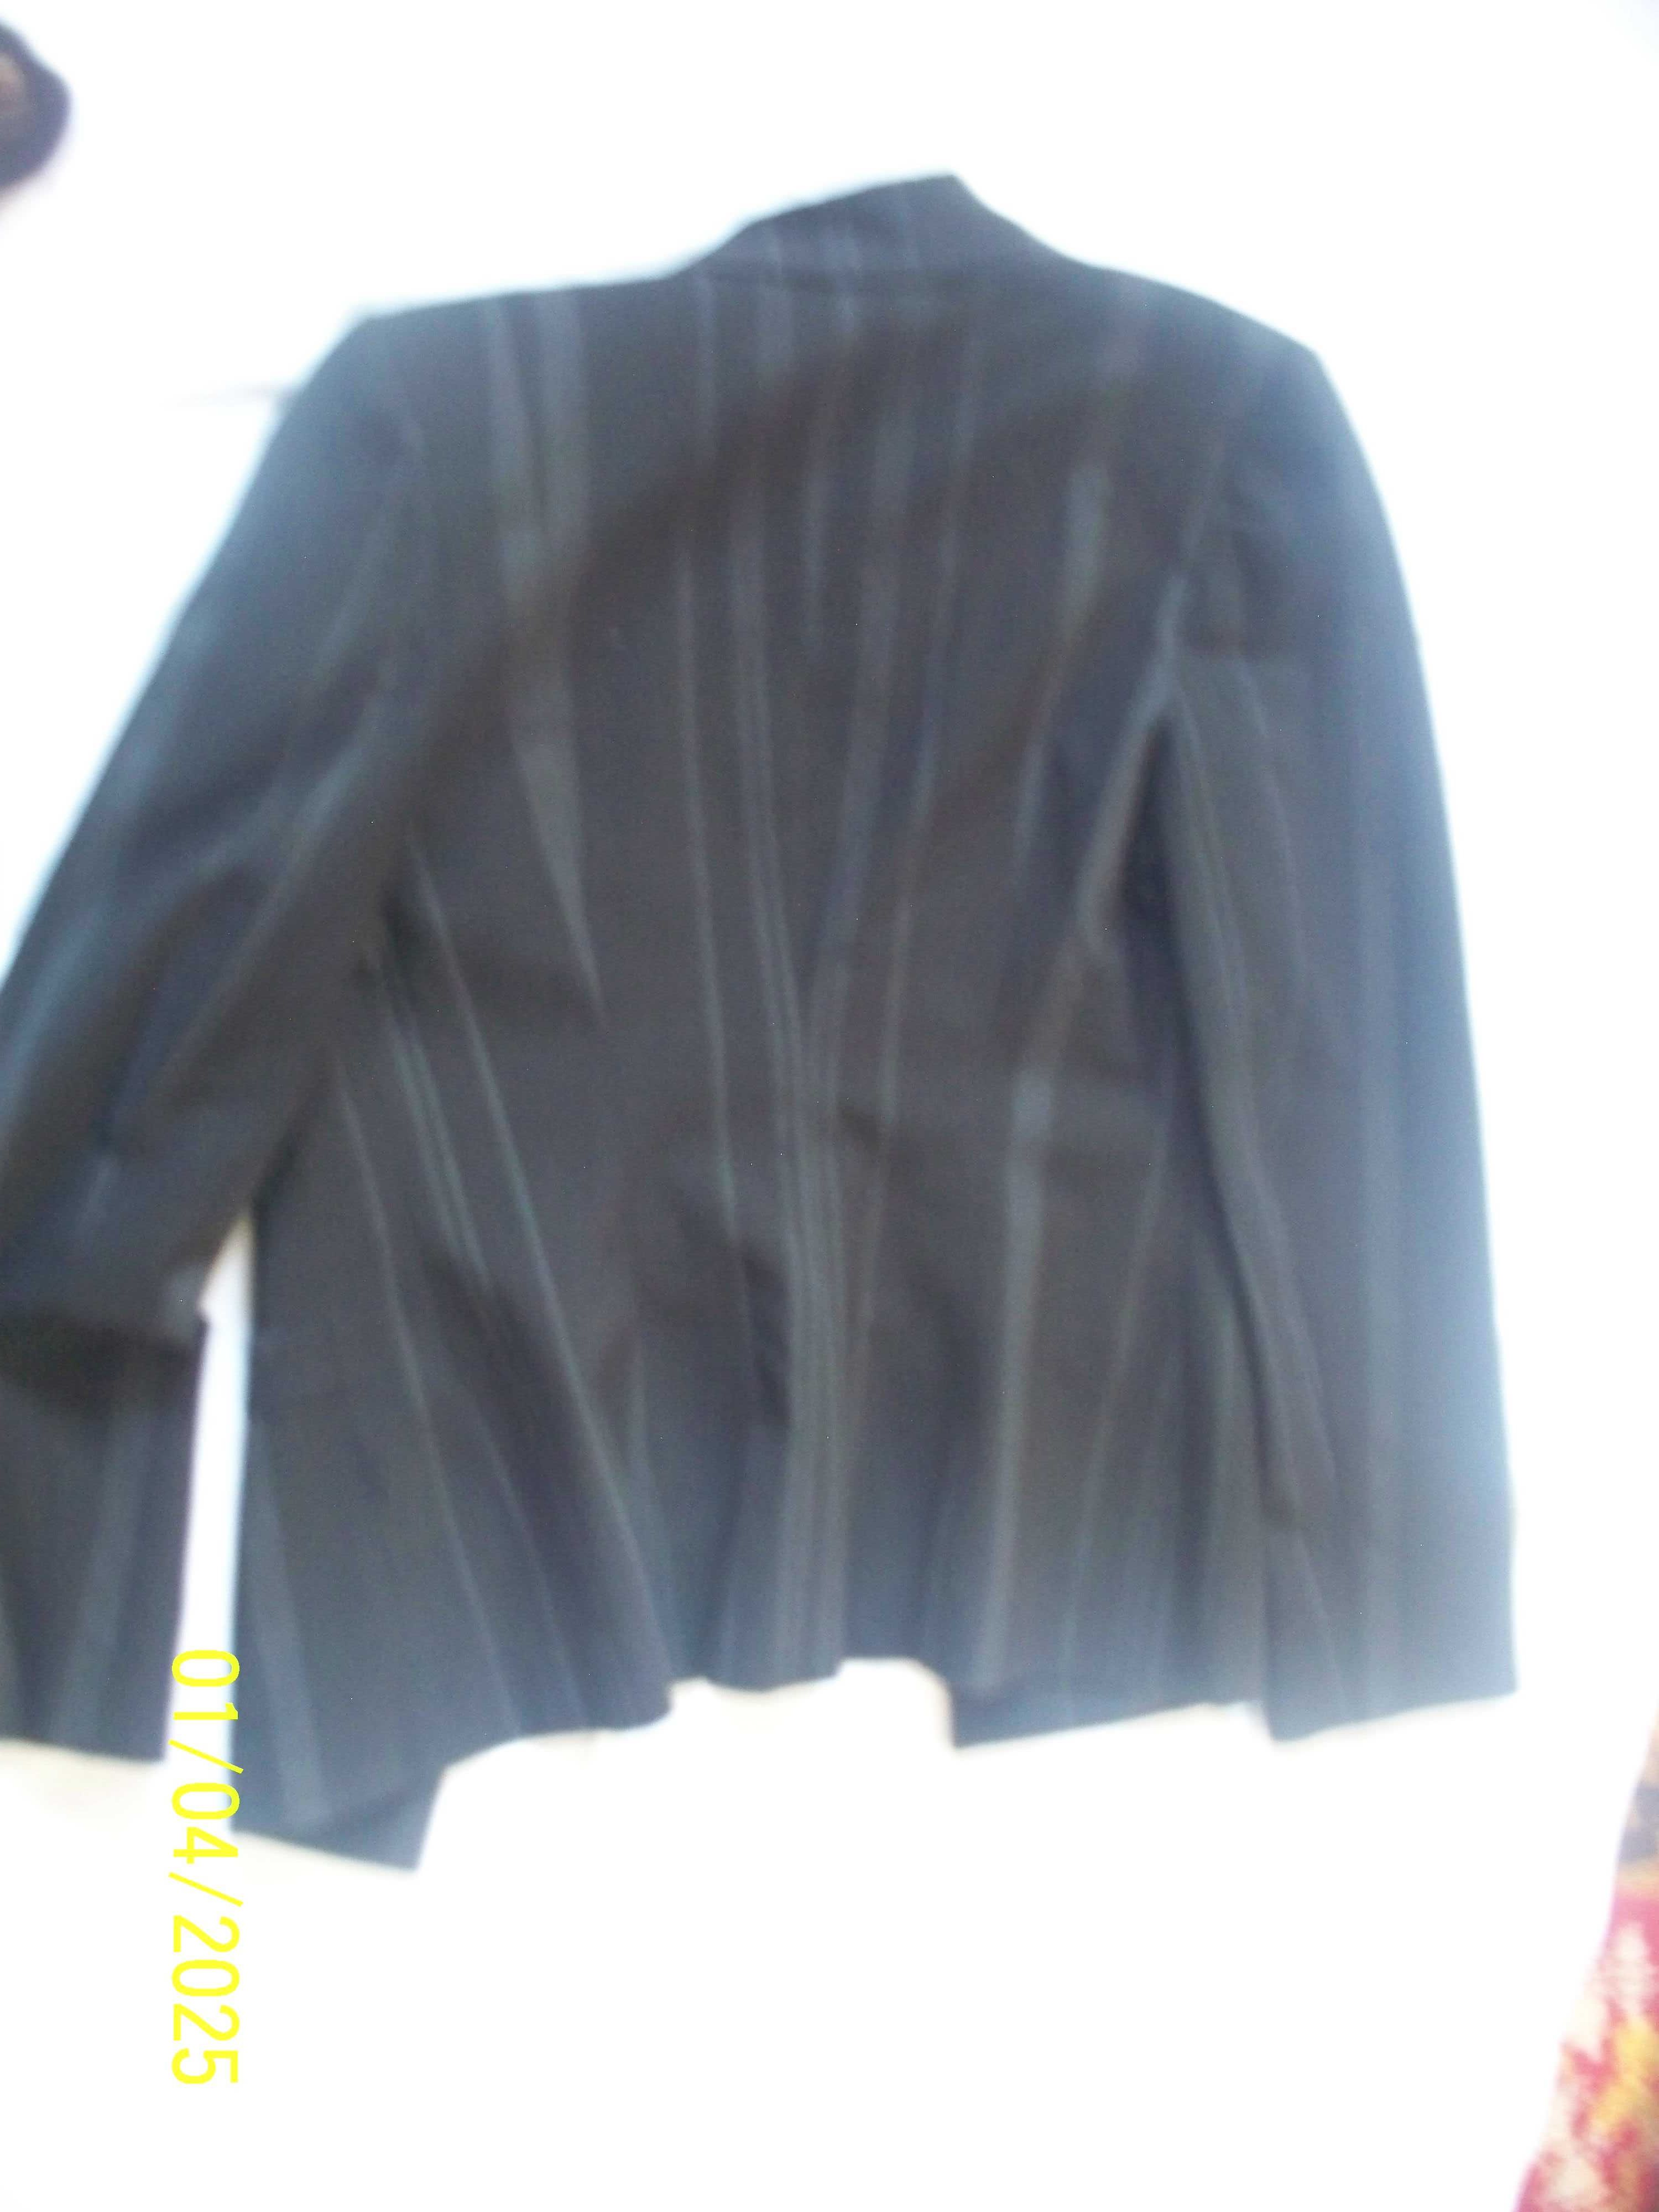 2 черных жакета -пиджака, большой в тонкую полоску, разм 40 и 60